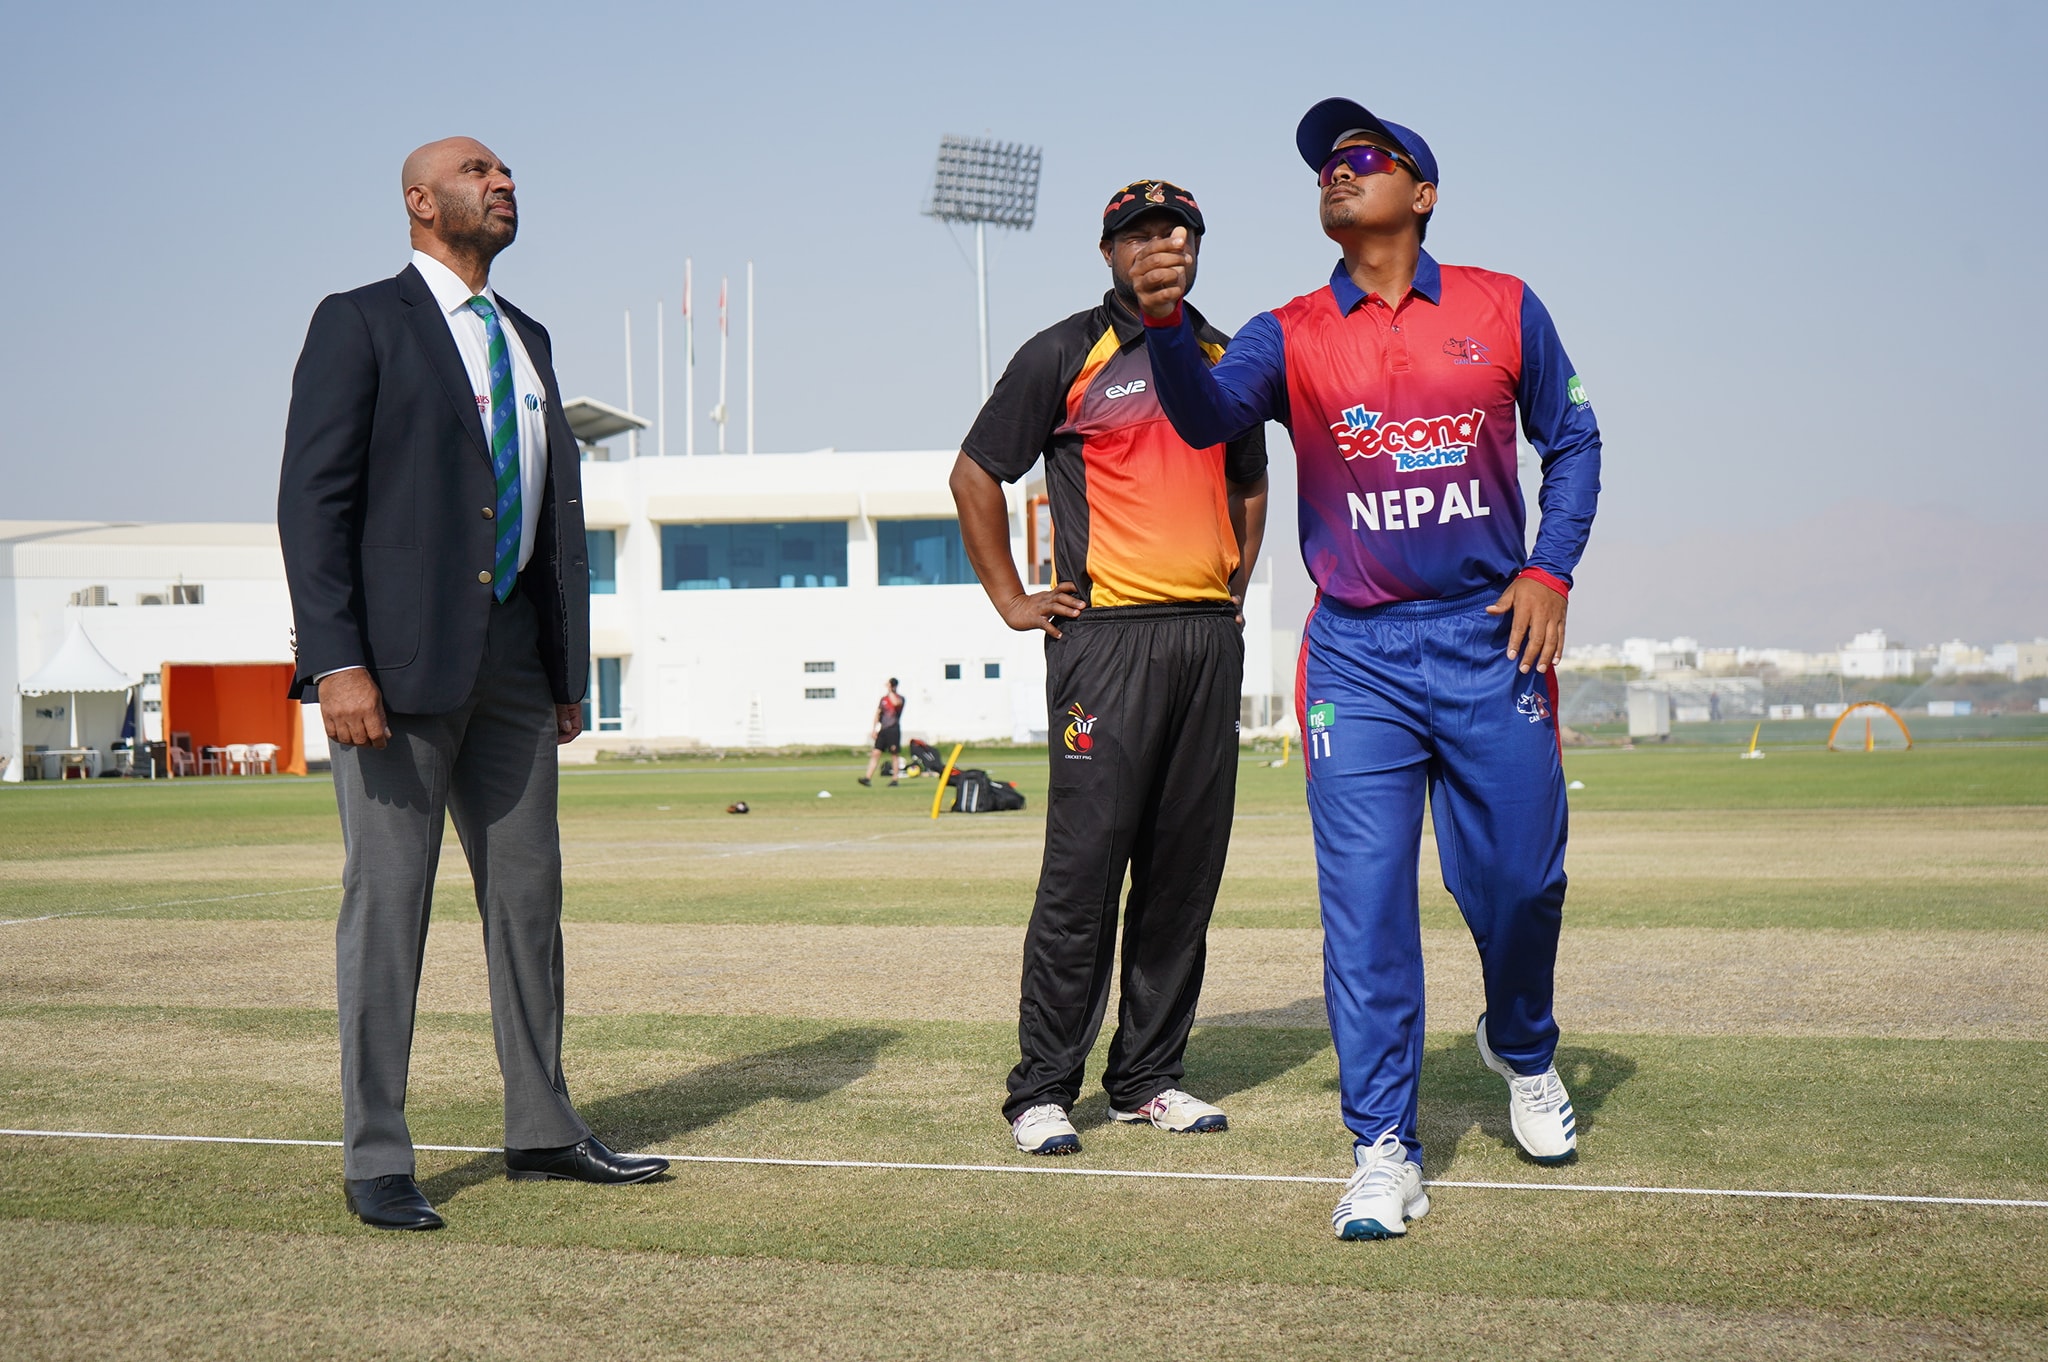 Nepal vs PNG: Nepal batting first after winning toss